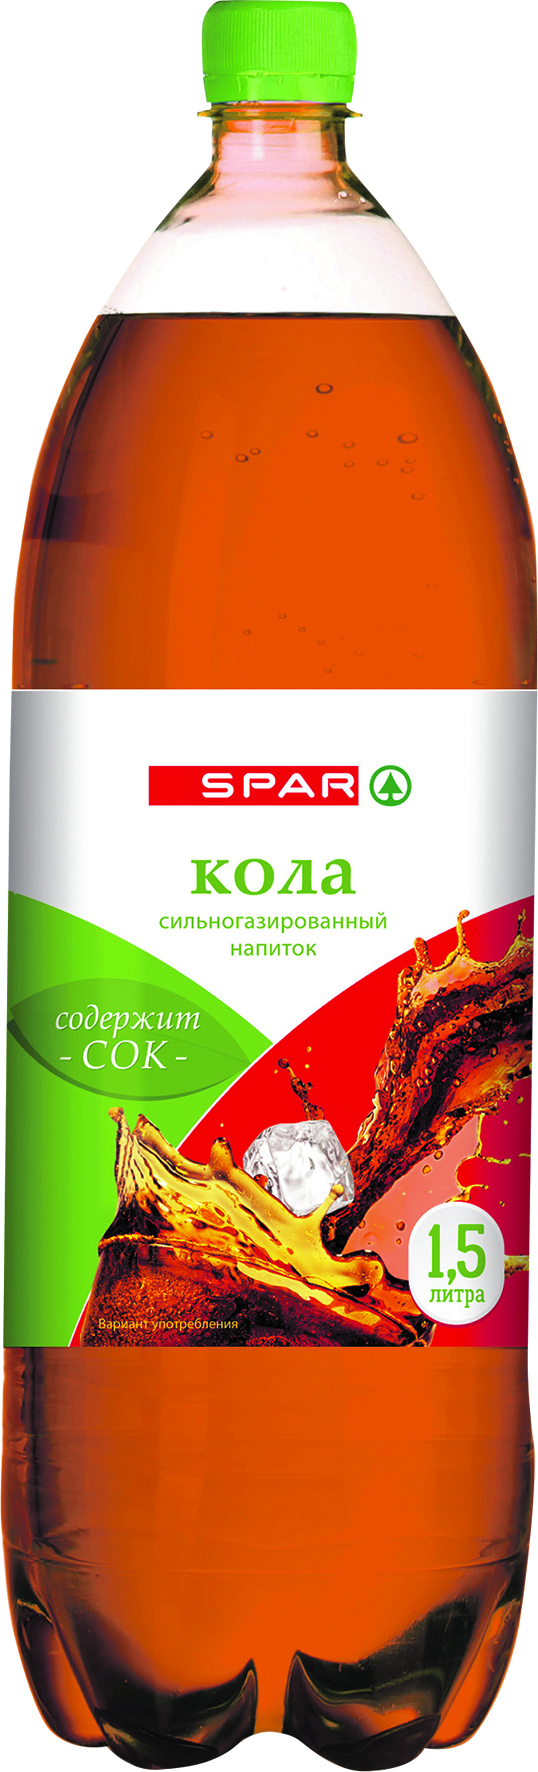 Газированный напиток Spar Кола 1,5 л